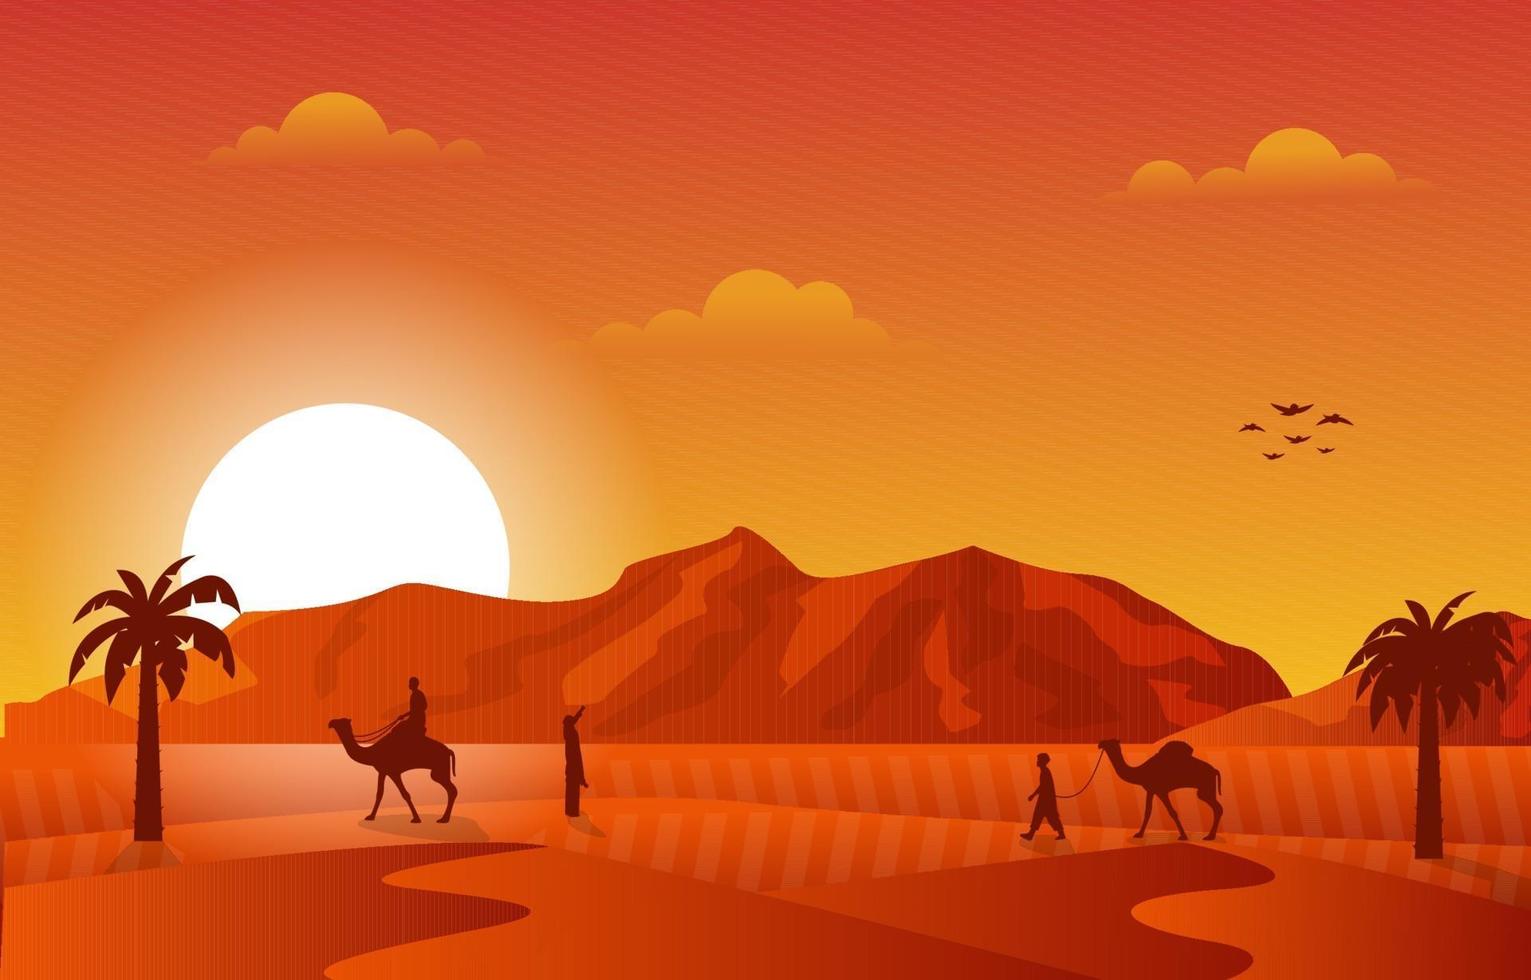 ilustração da cultura islâmica muçulmana do pôr do sol no deserto árabe camelo caravana vetor